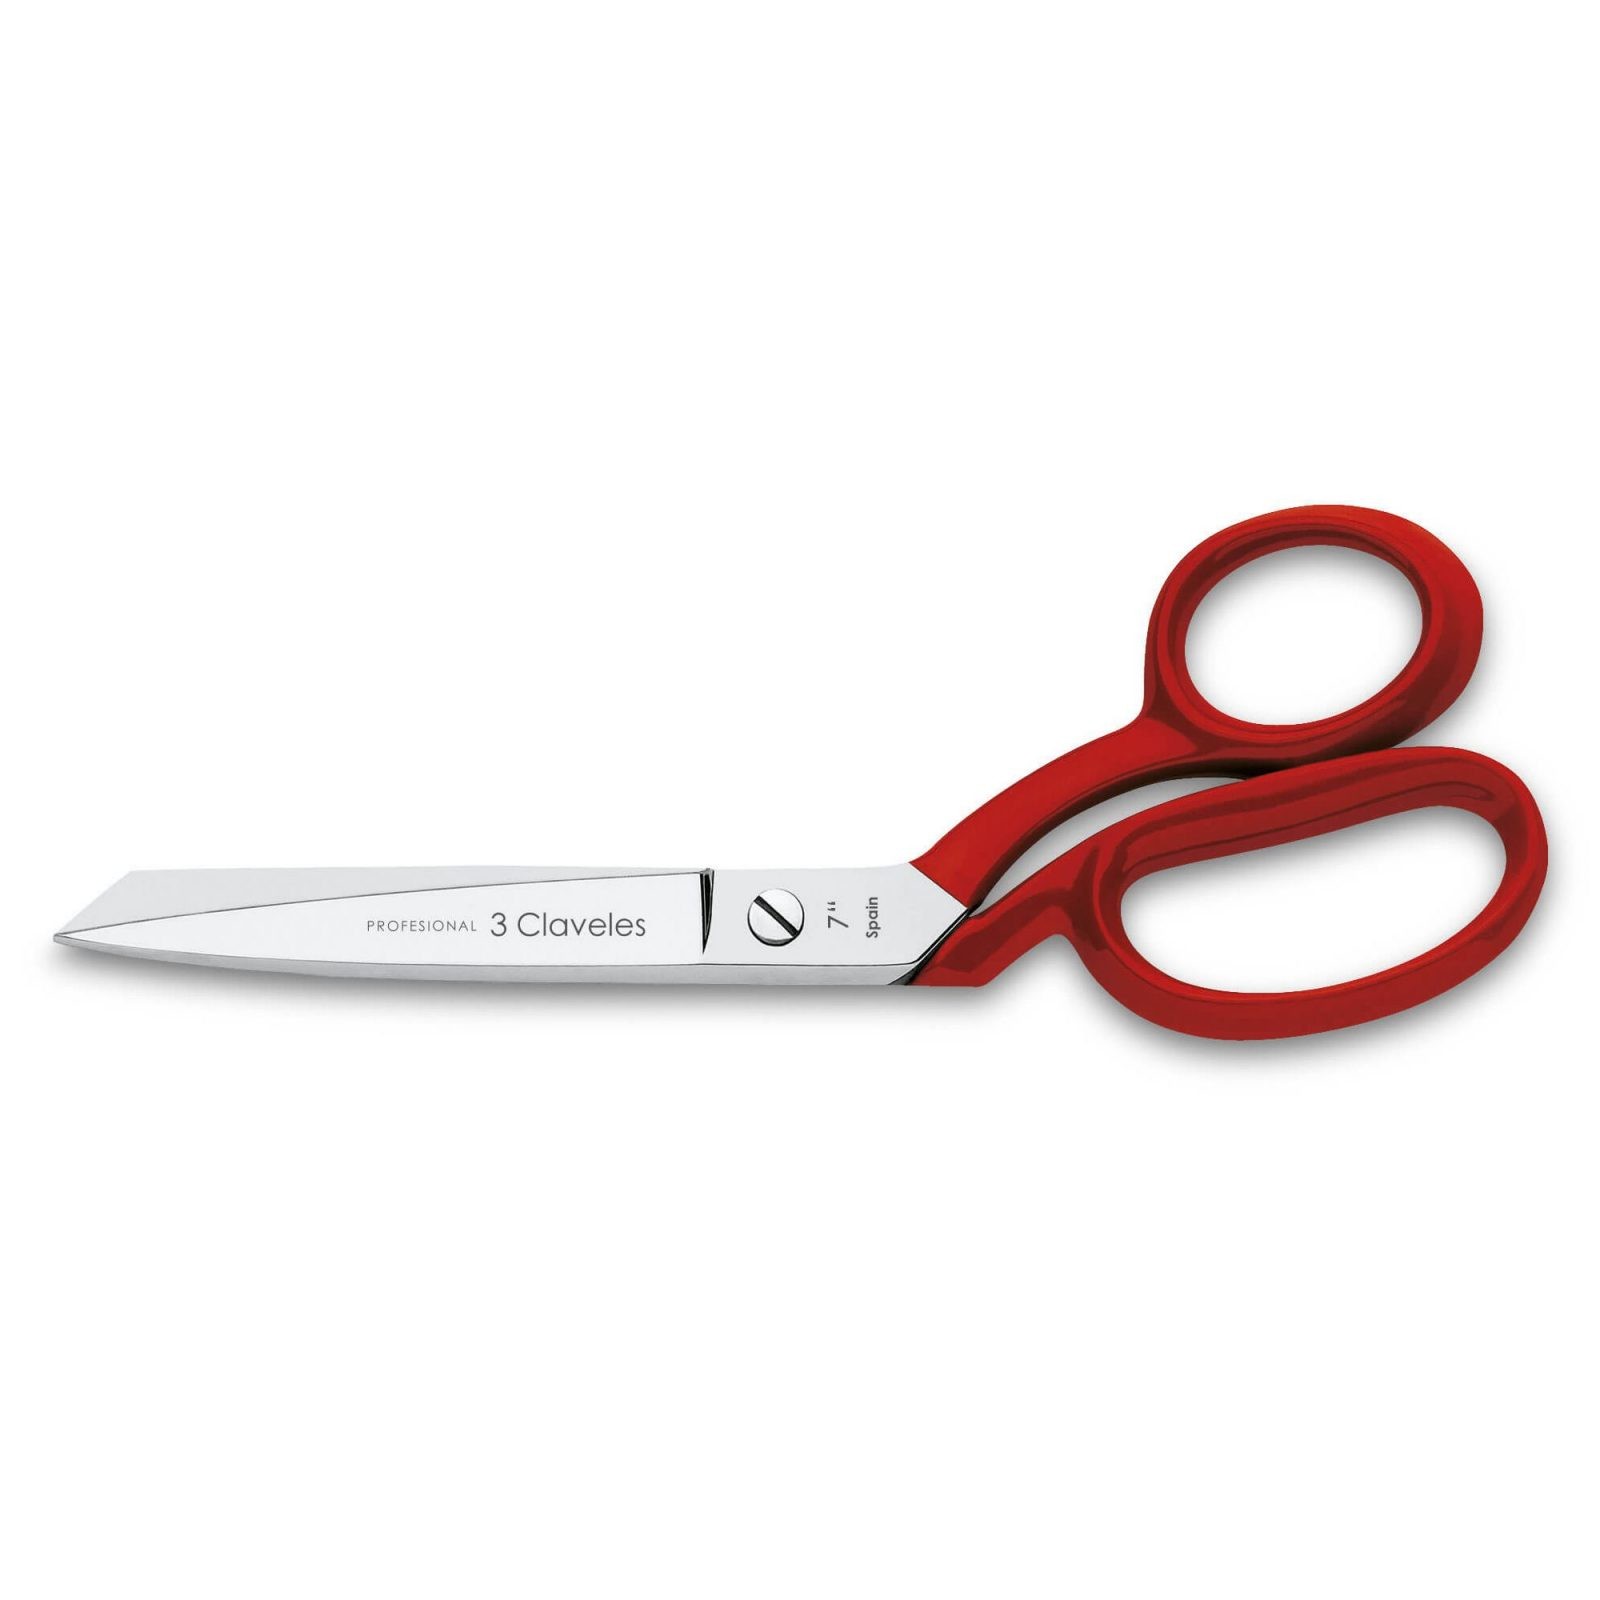 SASTRESA Scissors by 3 CLAVELES